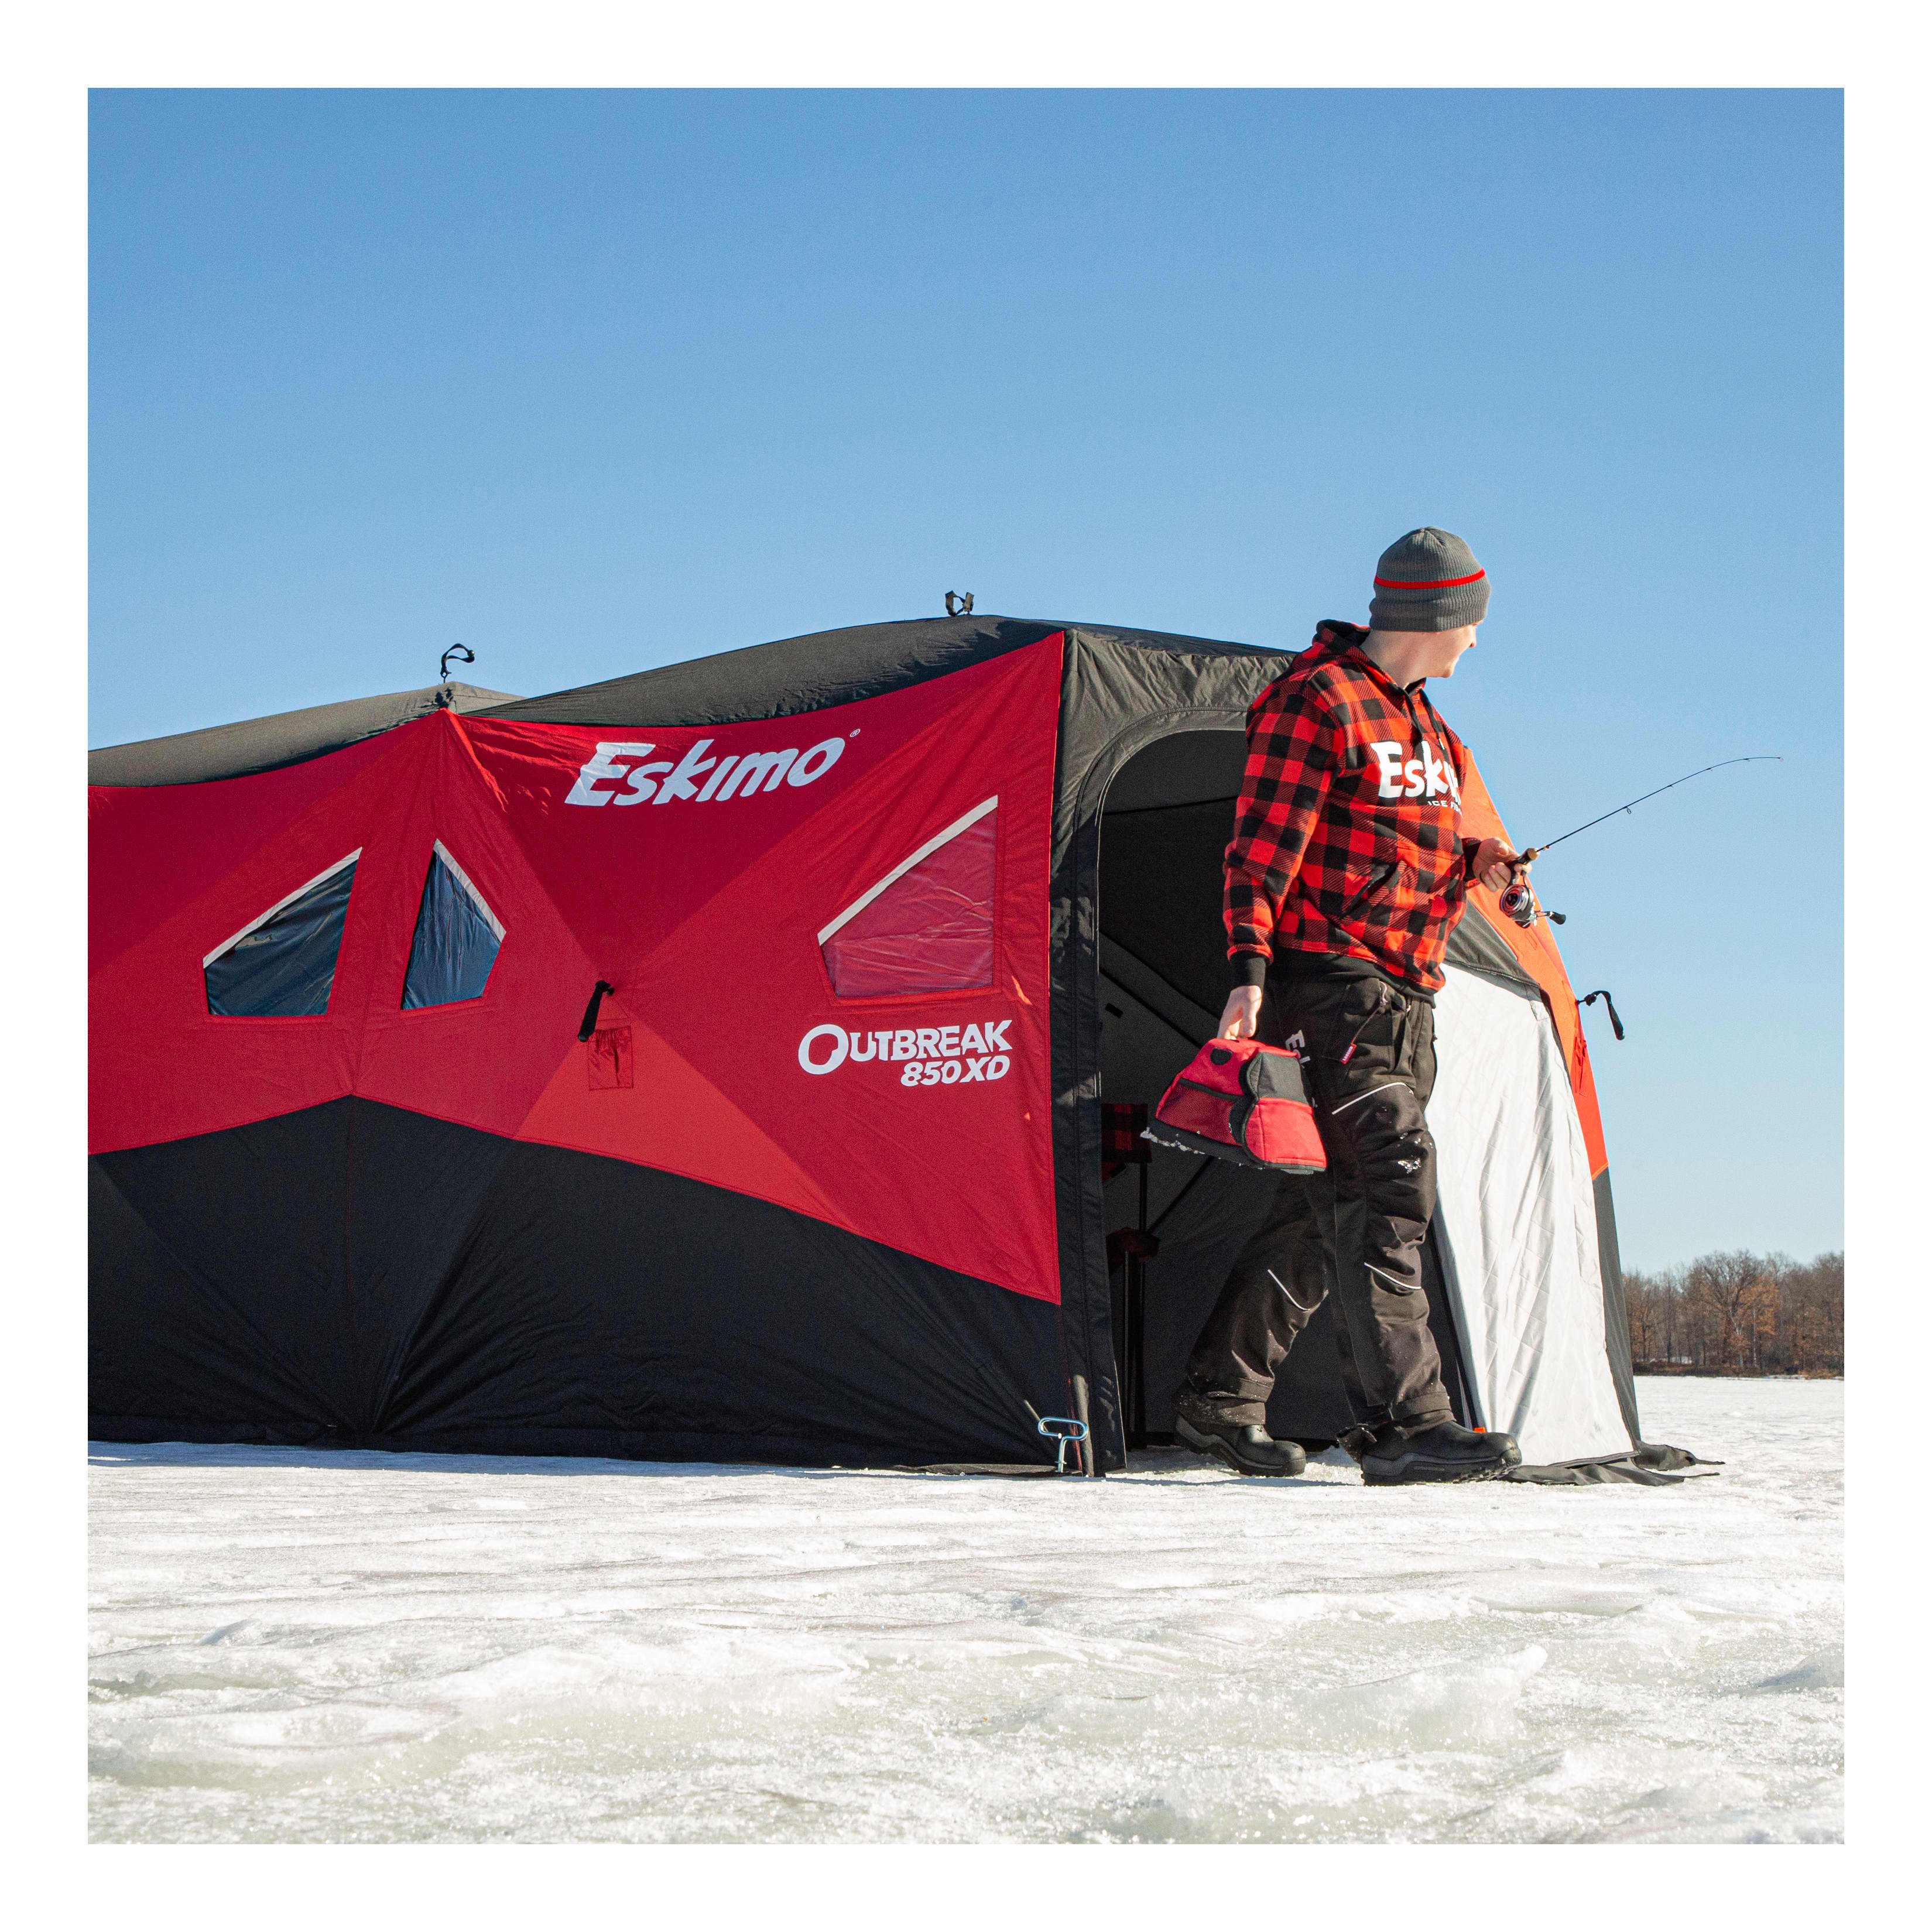 Eskimo® Outbreak 850XD Ice Shelter